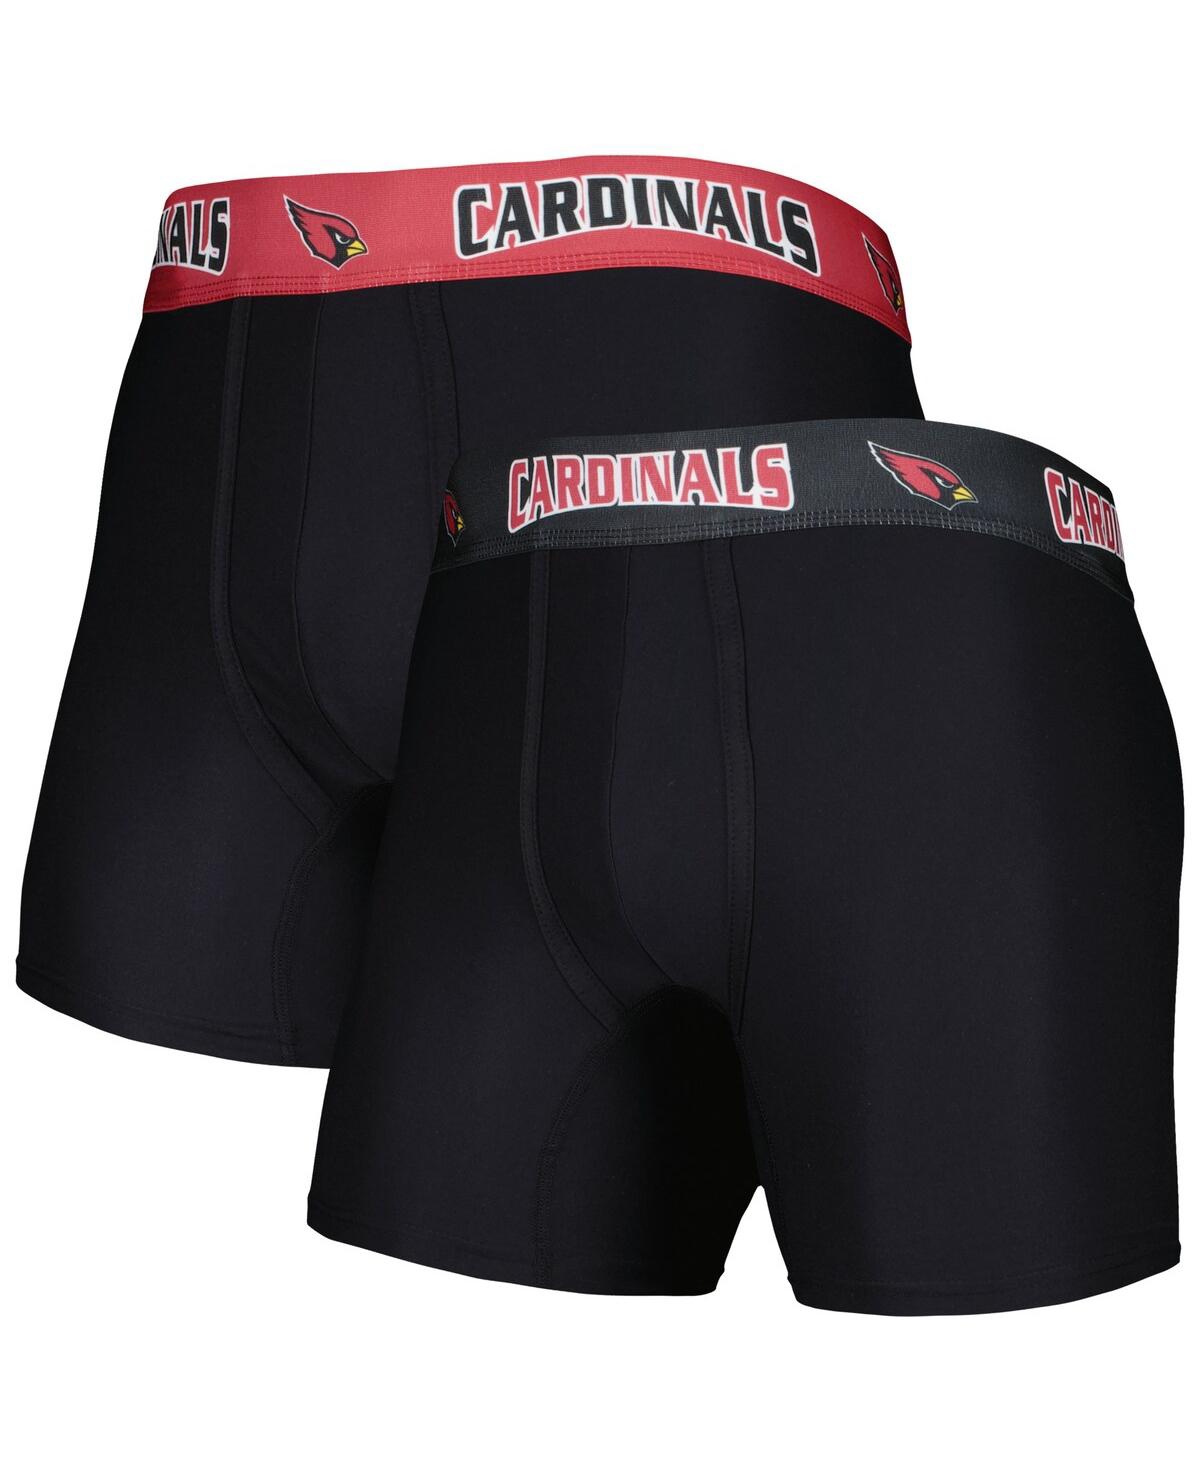 Men's Concepts Sport Black, Cardinal Arizona Cardinals 2-Pack Boxer Briefs Set - Black, Cardinal